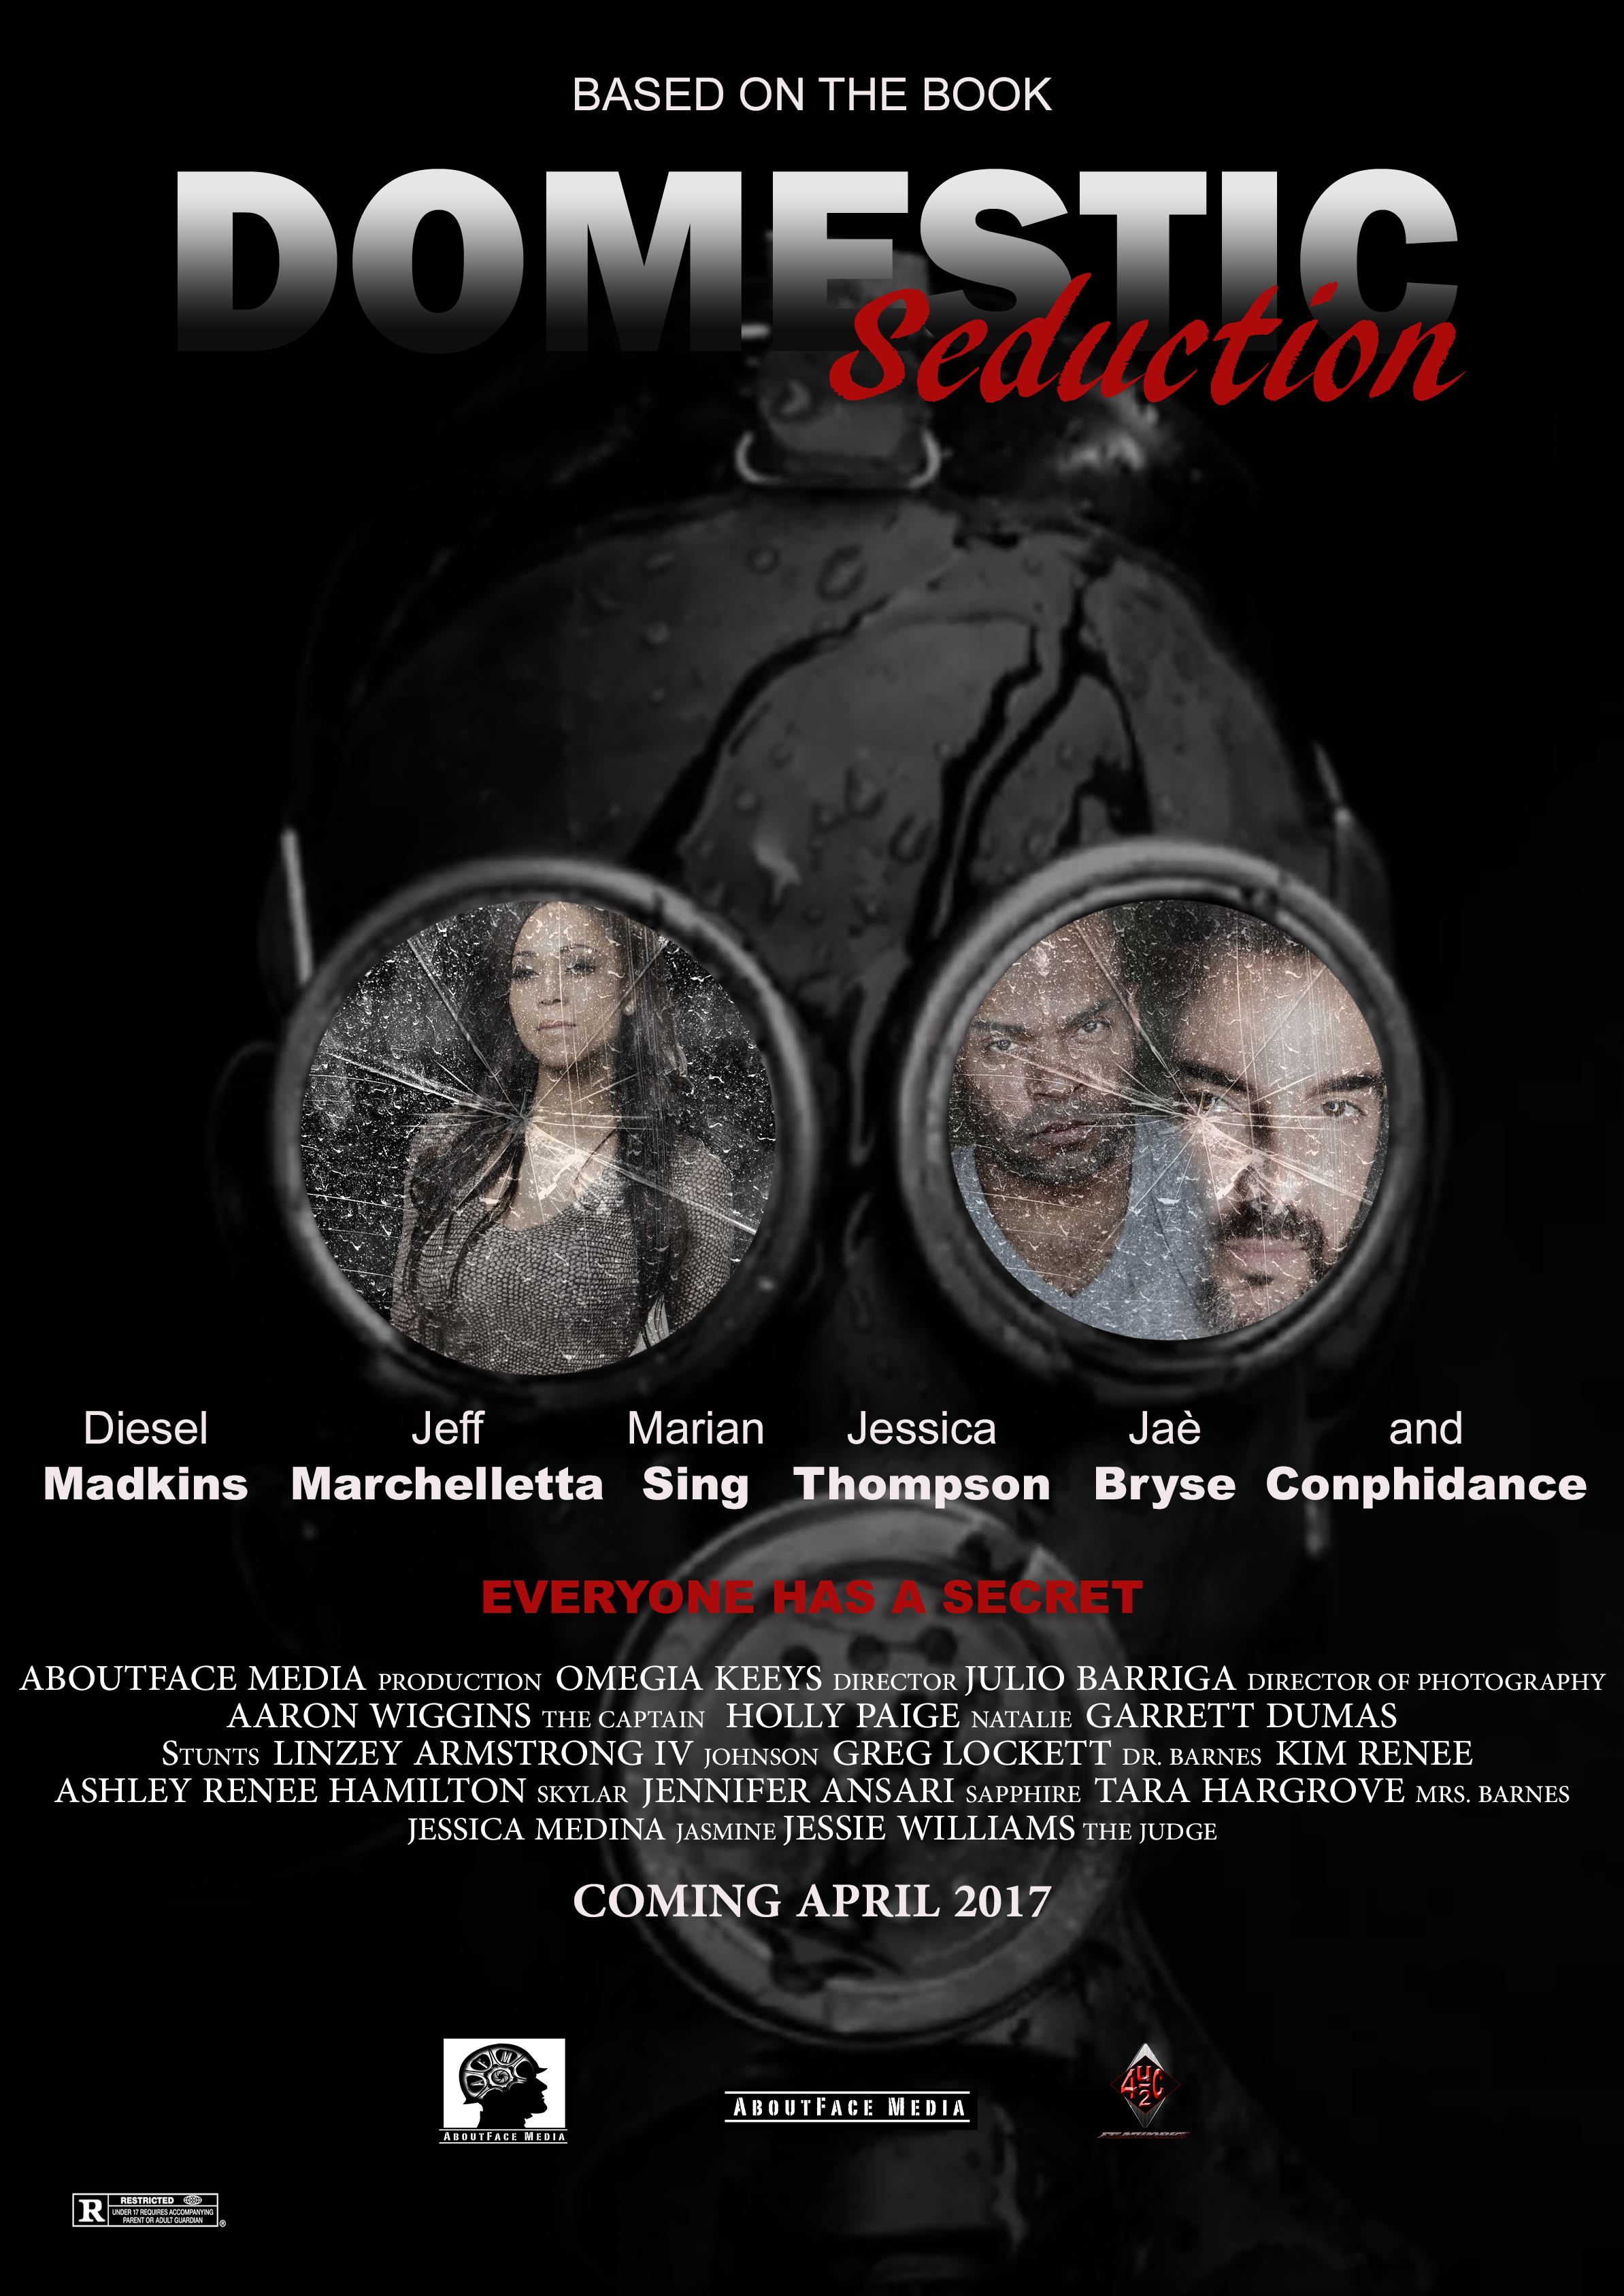 Nonton film Domestic Seduction layarkaca21 indoxx1 ganool online streaming terbaru